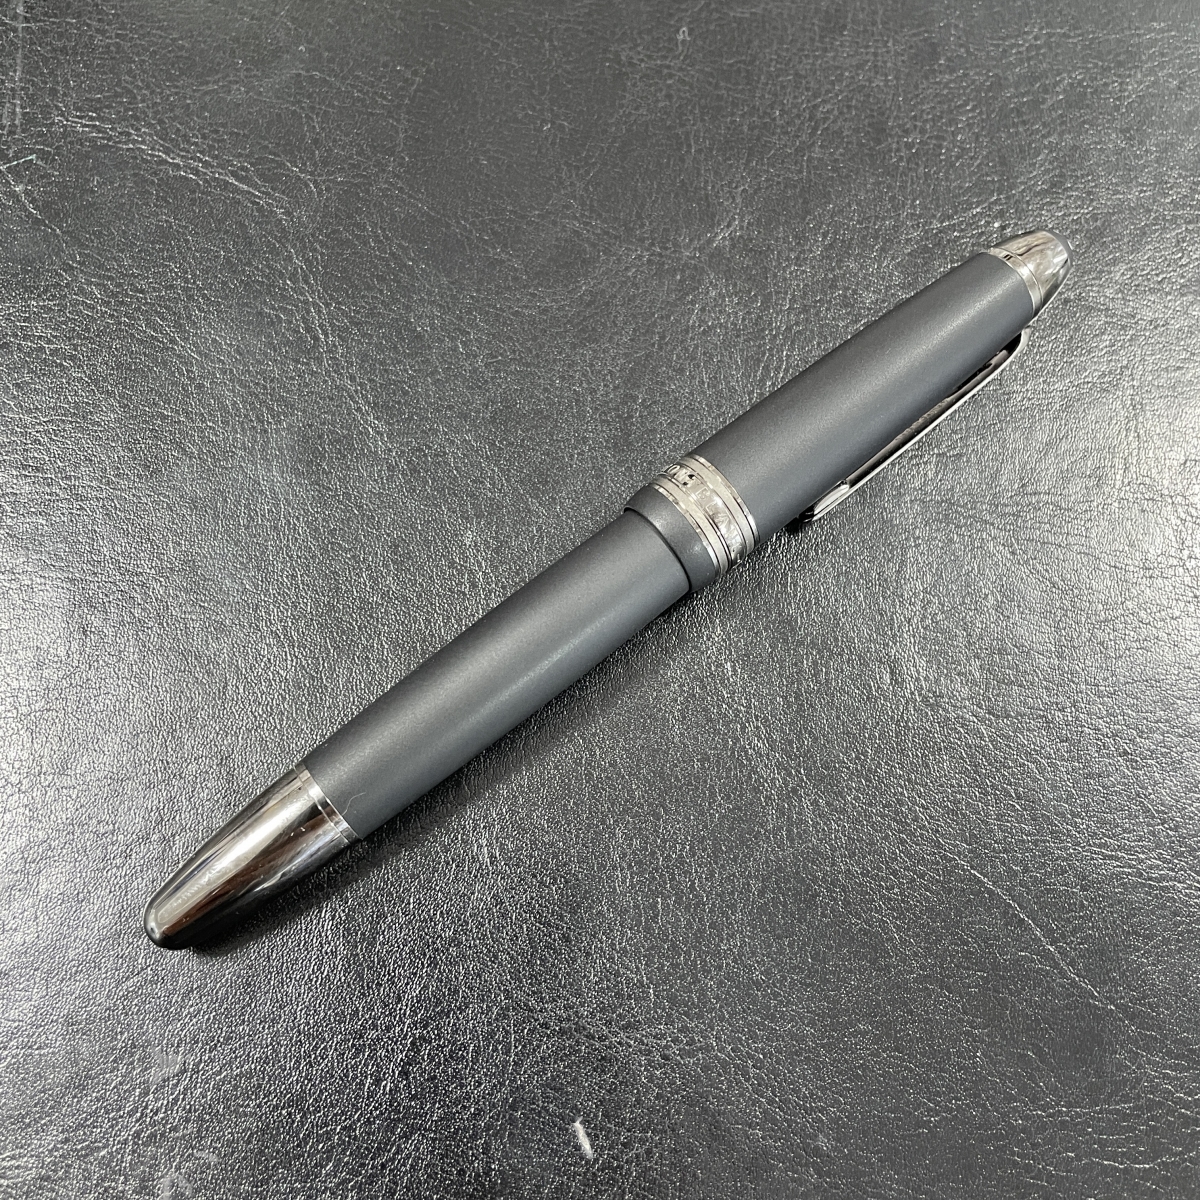 モンブランのペン先K14素材 ウルトラブラック マイスターシュテュック 146の買取実績です。